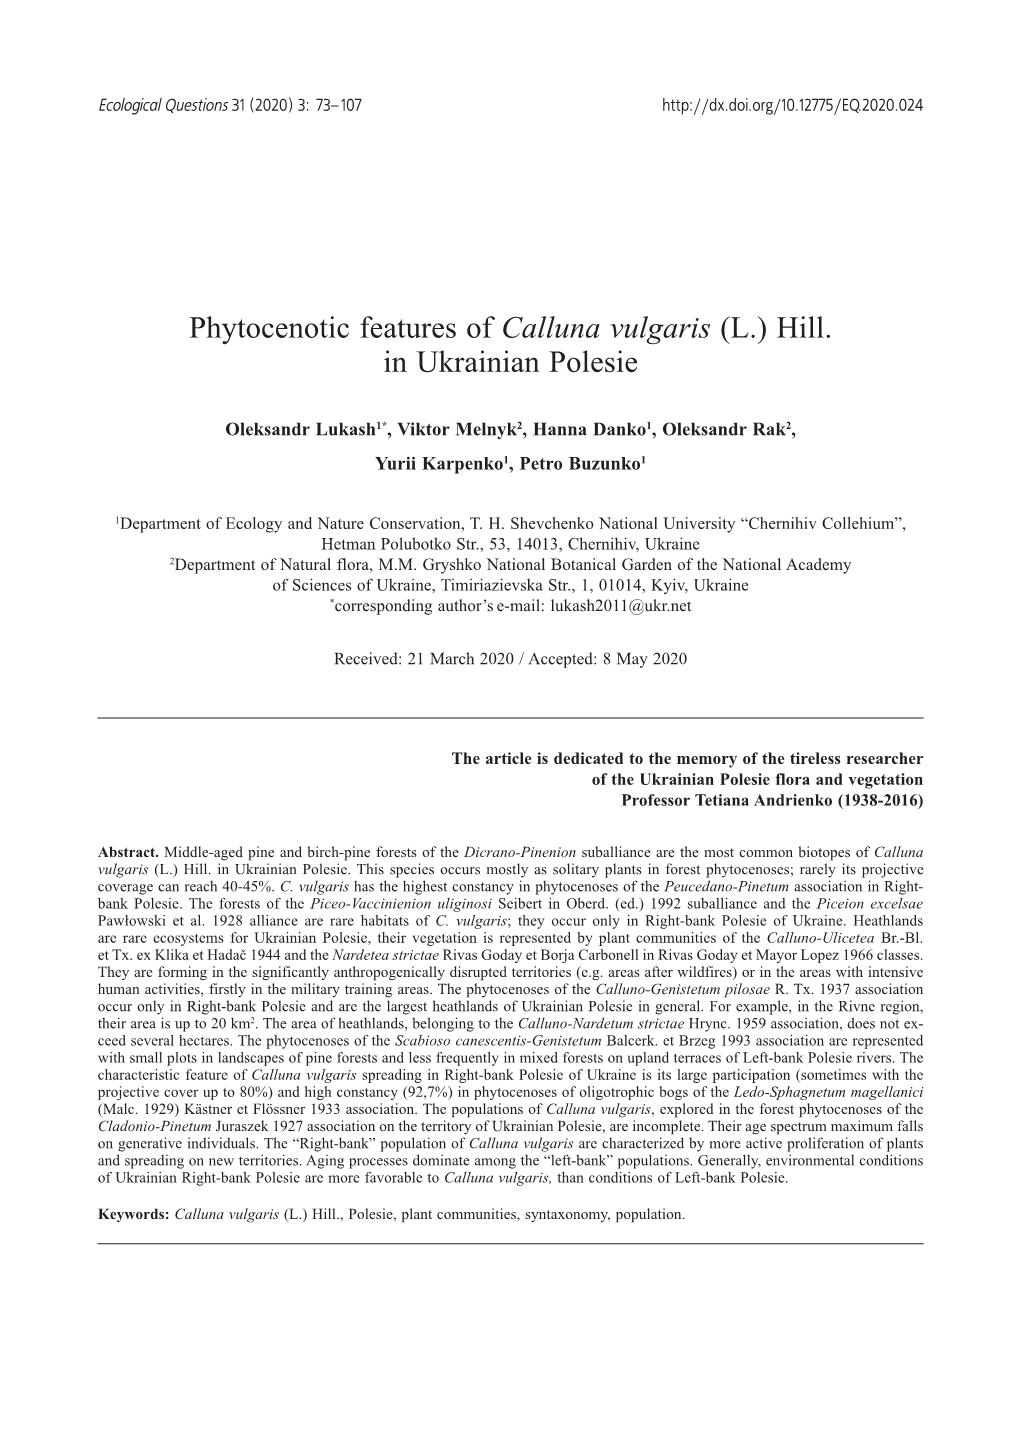 Phytocenotic Features of Calluna Vulgaris (L.) Hill. in Ukrainian Polesie